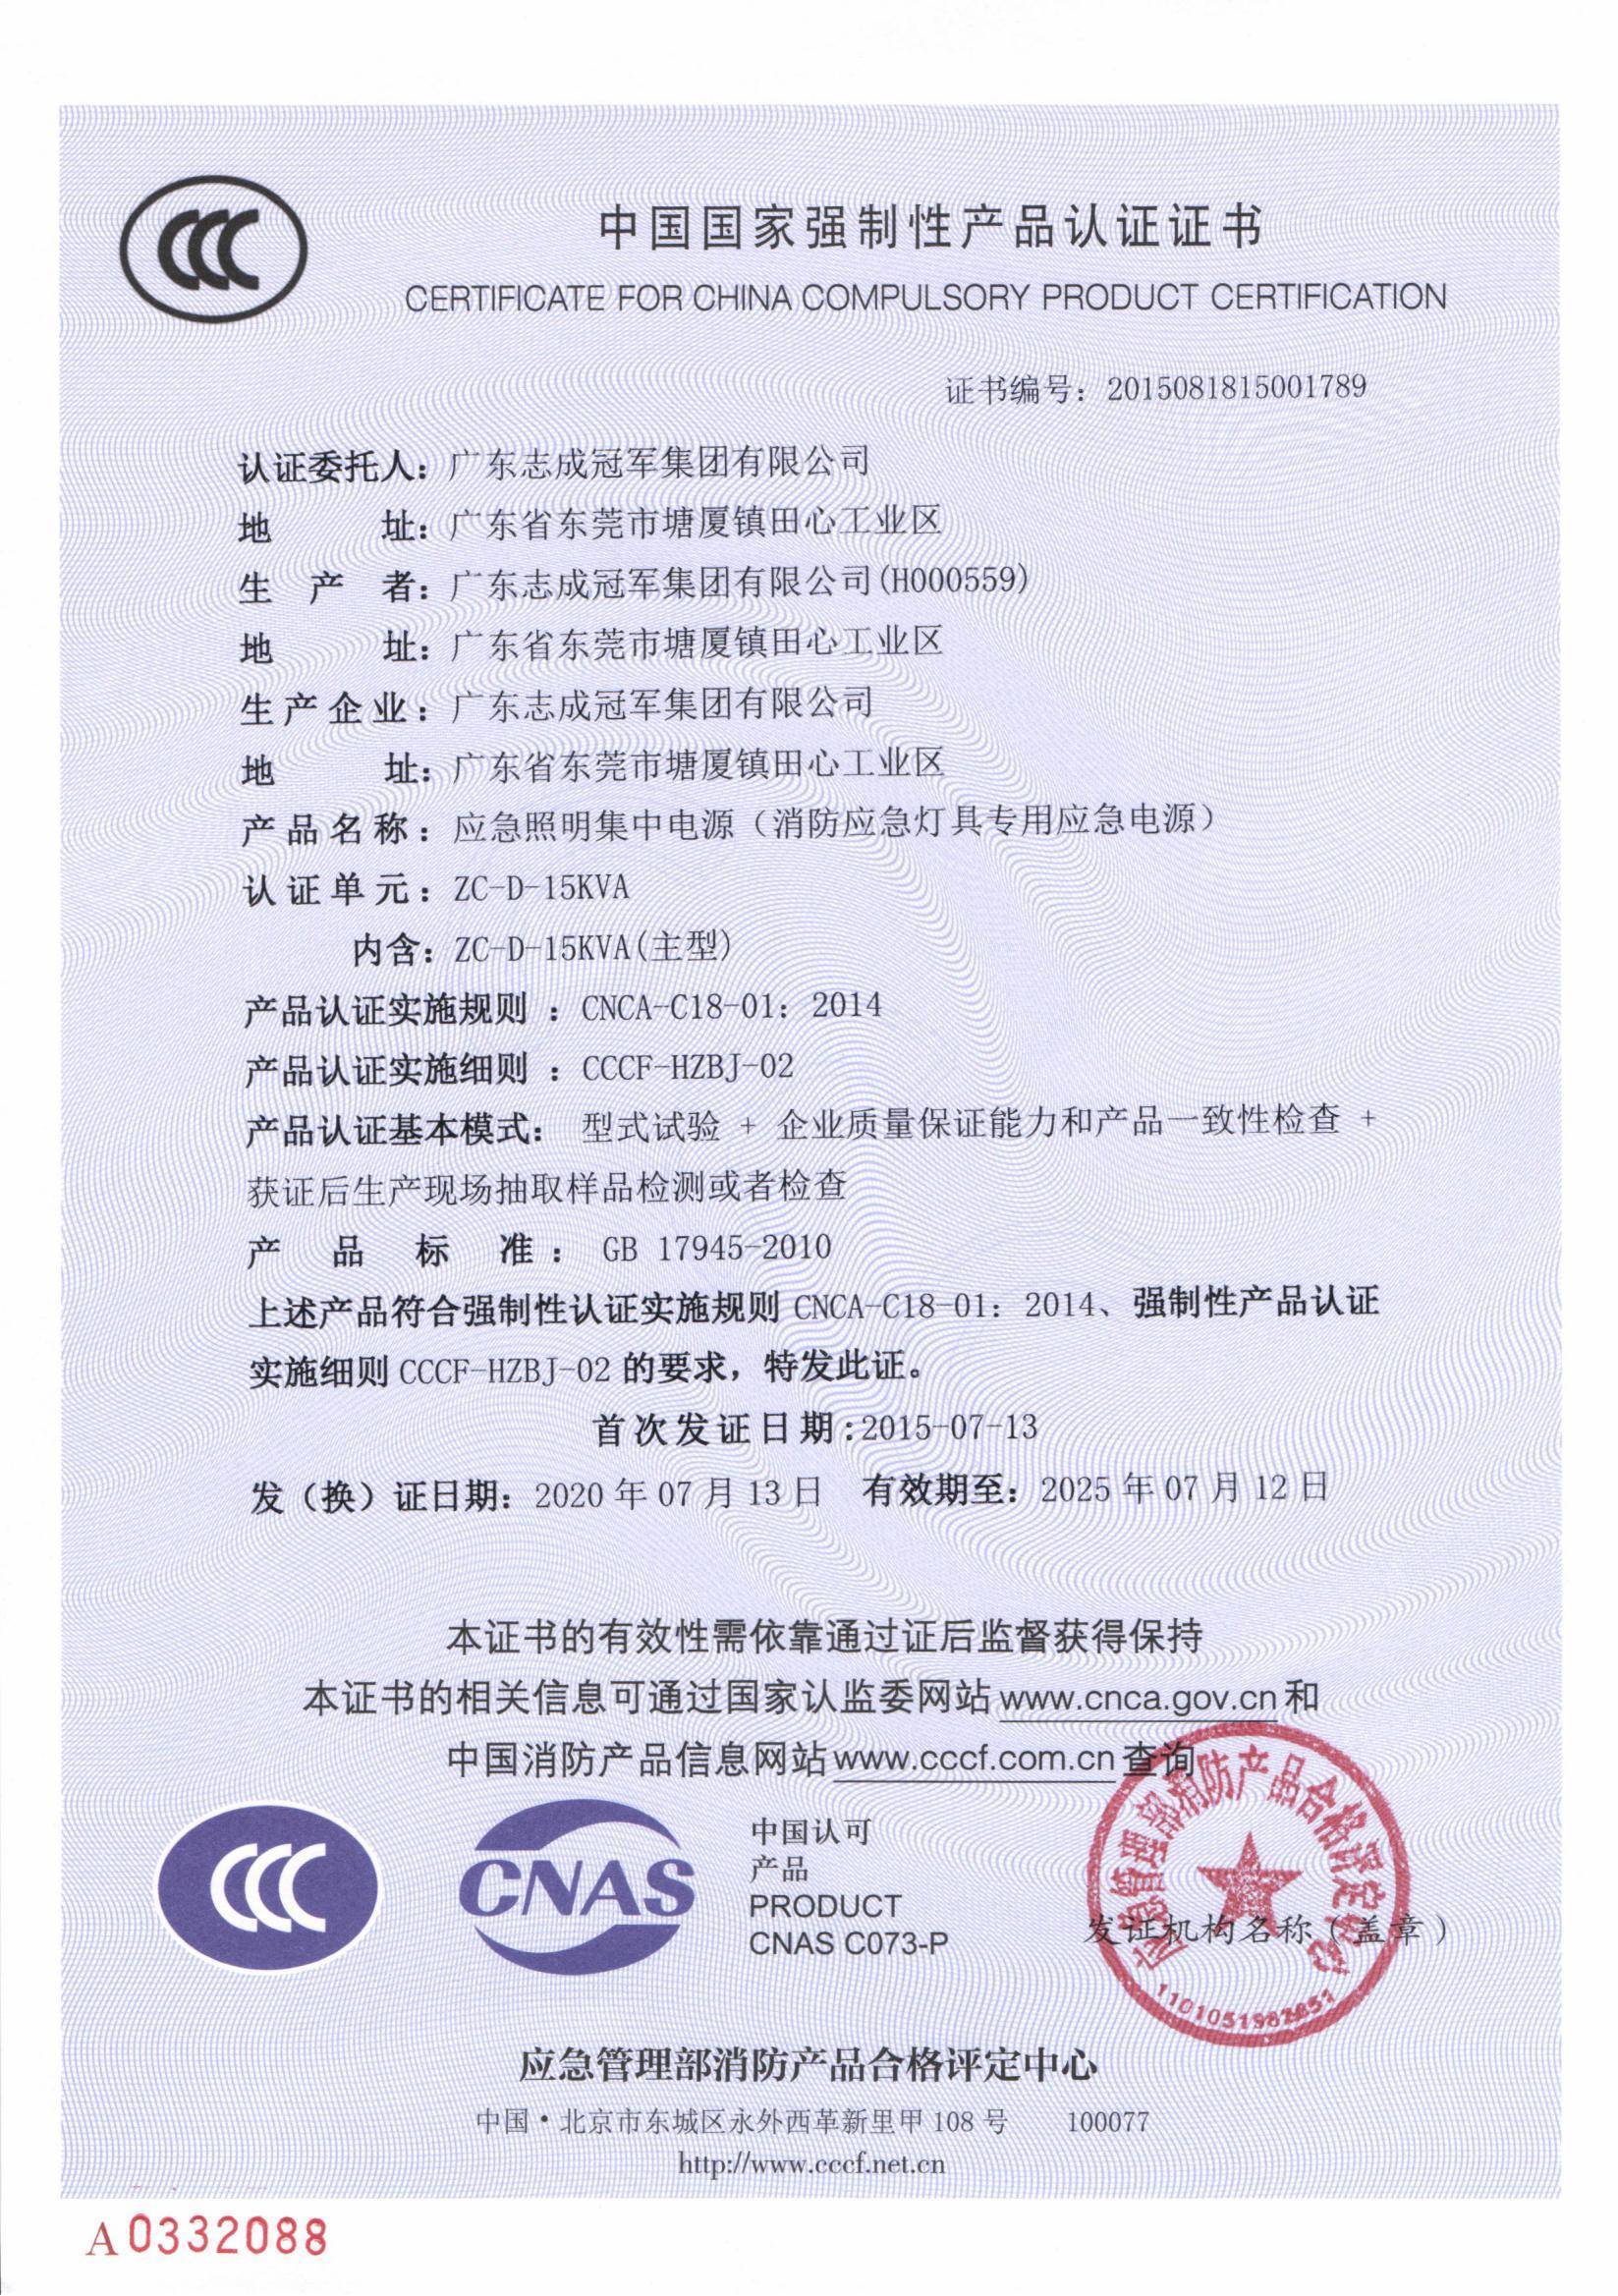 2020 ZC-D-15KVA证书